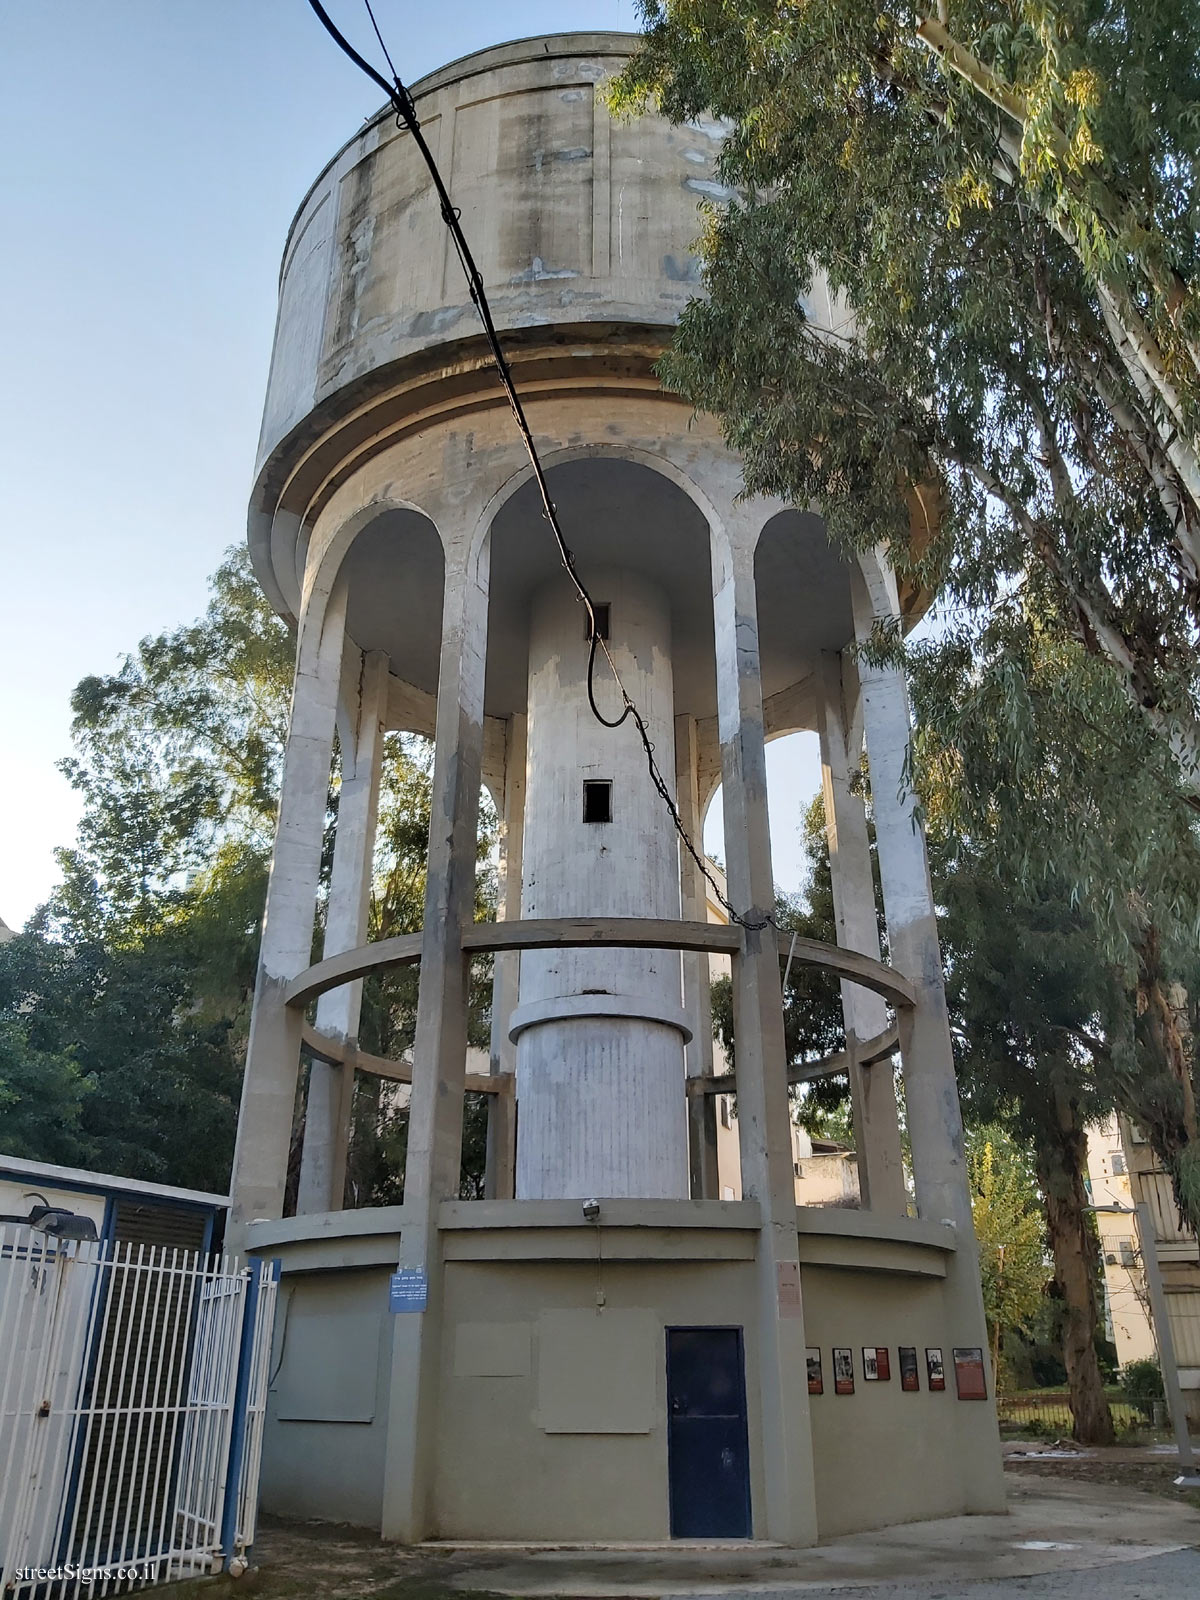 The Water Tower on Azar Street - Azar St 9, Holon, Israel